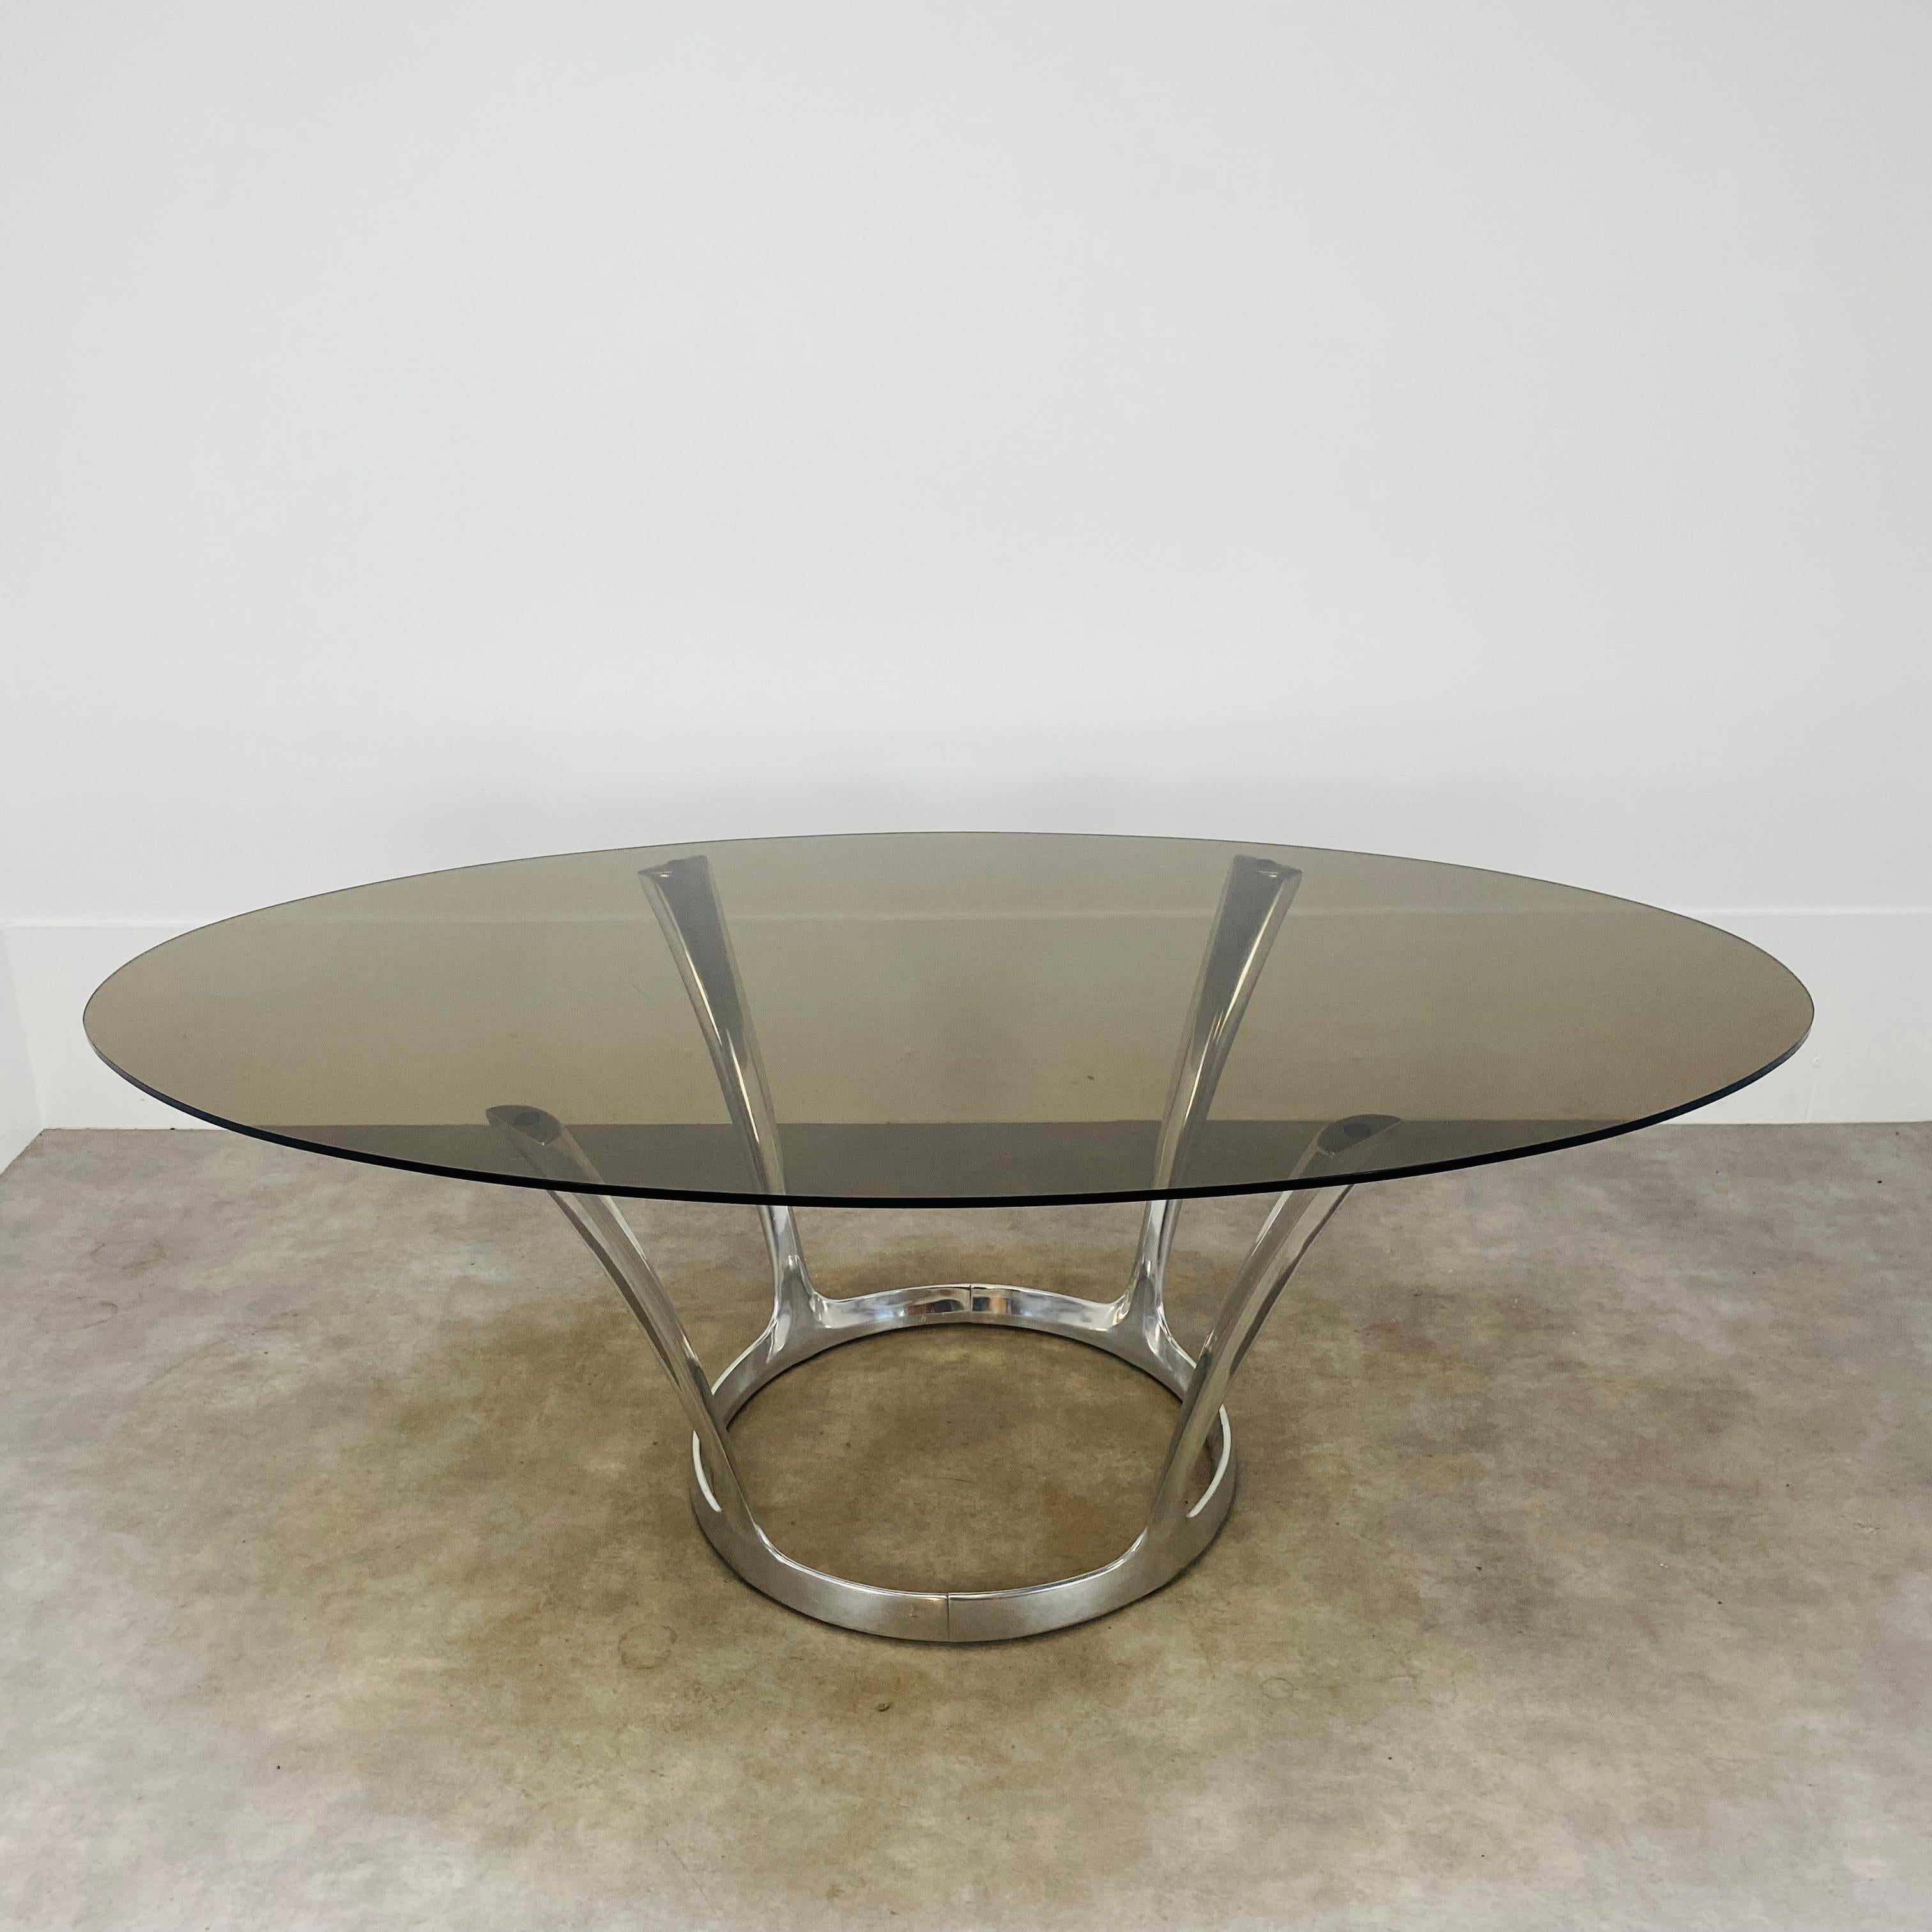 Table de salle à manger ovale du designer français Michel Charron, design typique des années soixante-dix. 
Très bel état, rares marques d'usure sur le verre et la base de la table en aluminium. Pas d'éclats sur le verre. La base de la table est